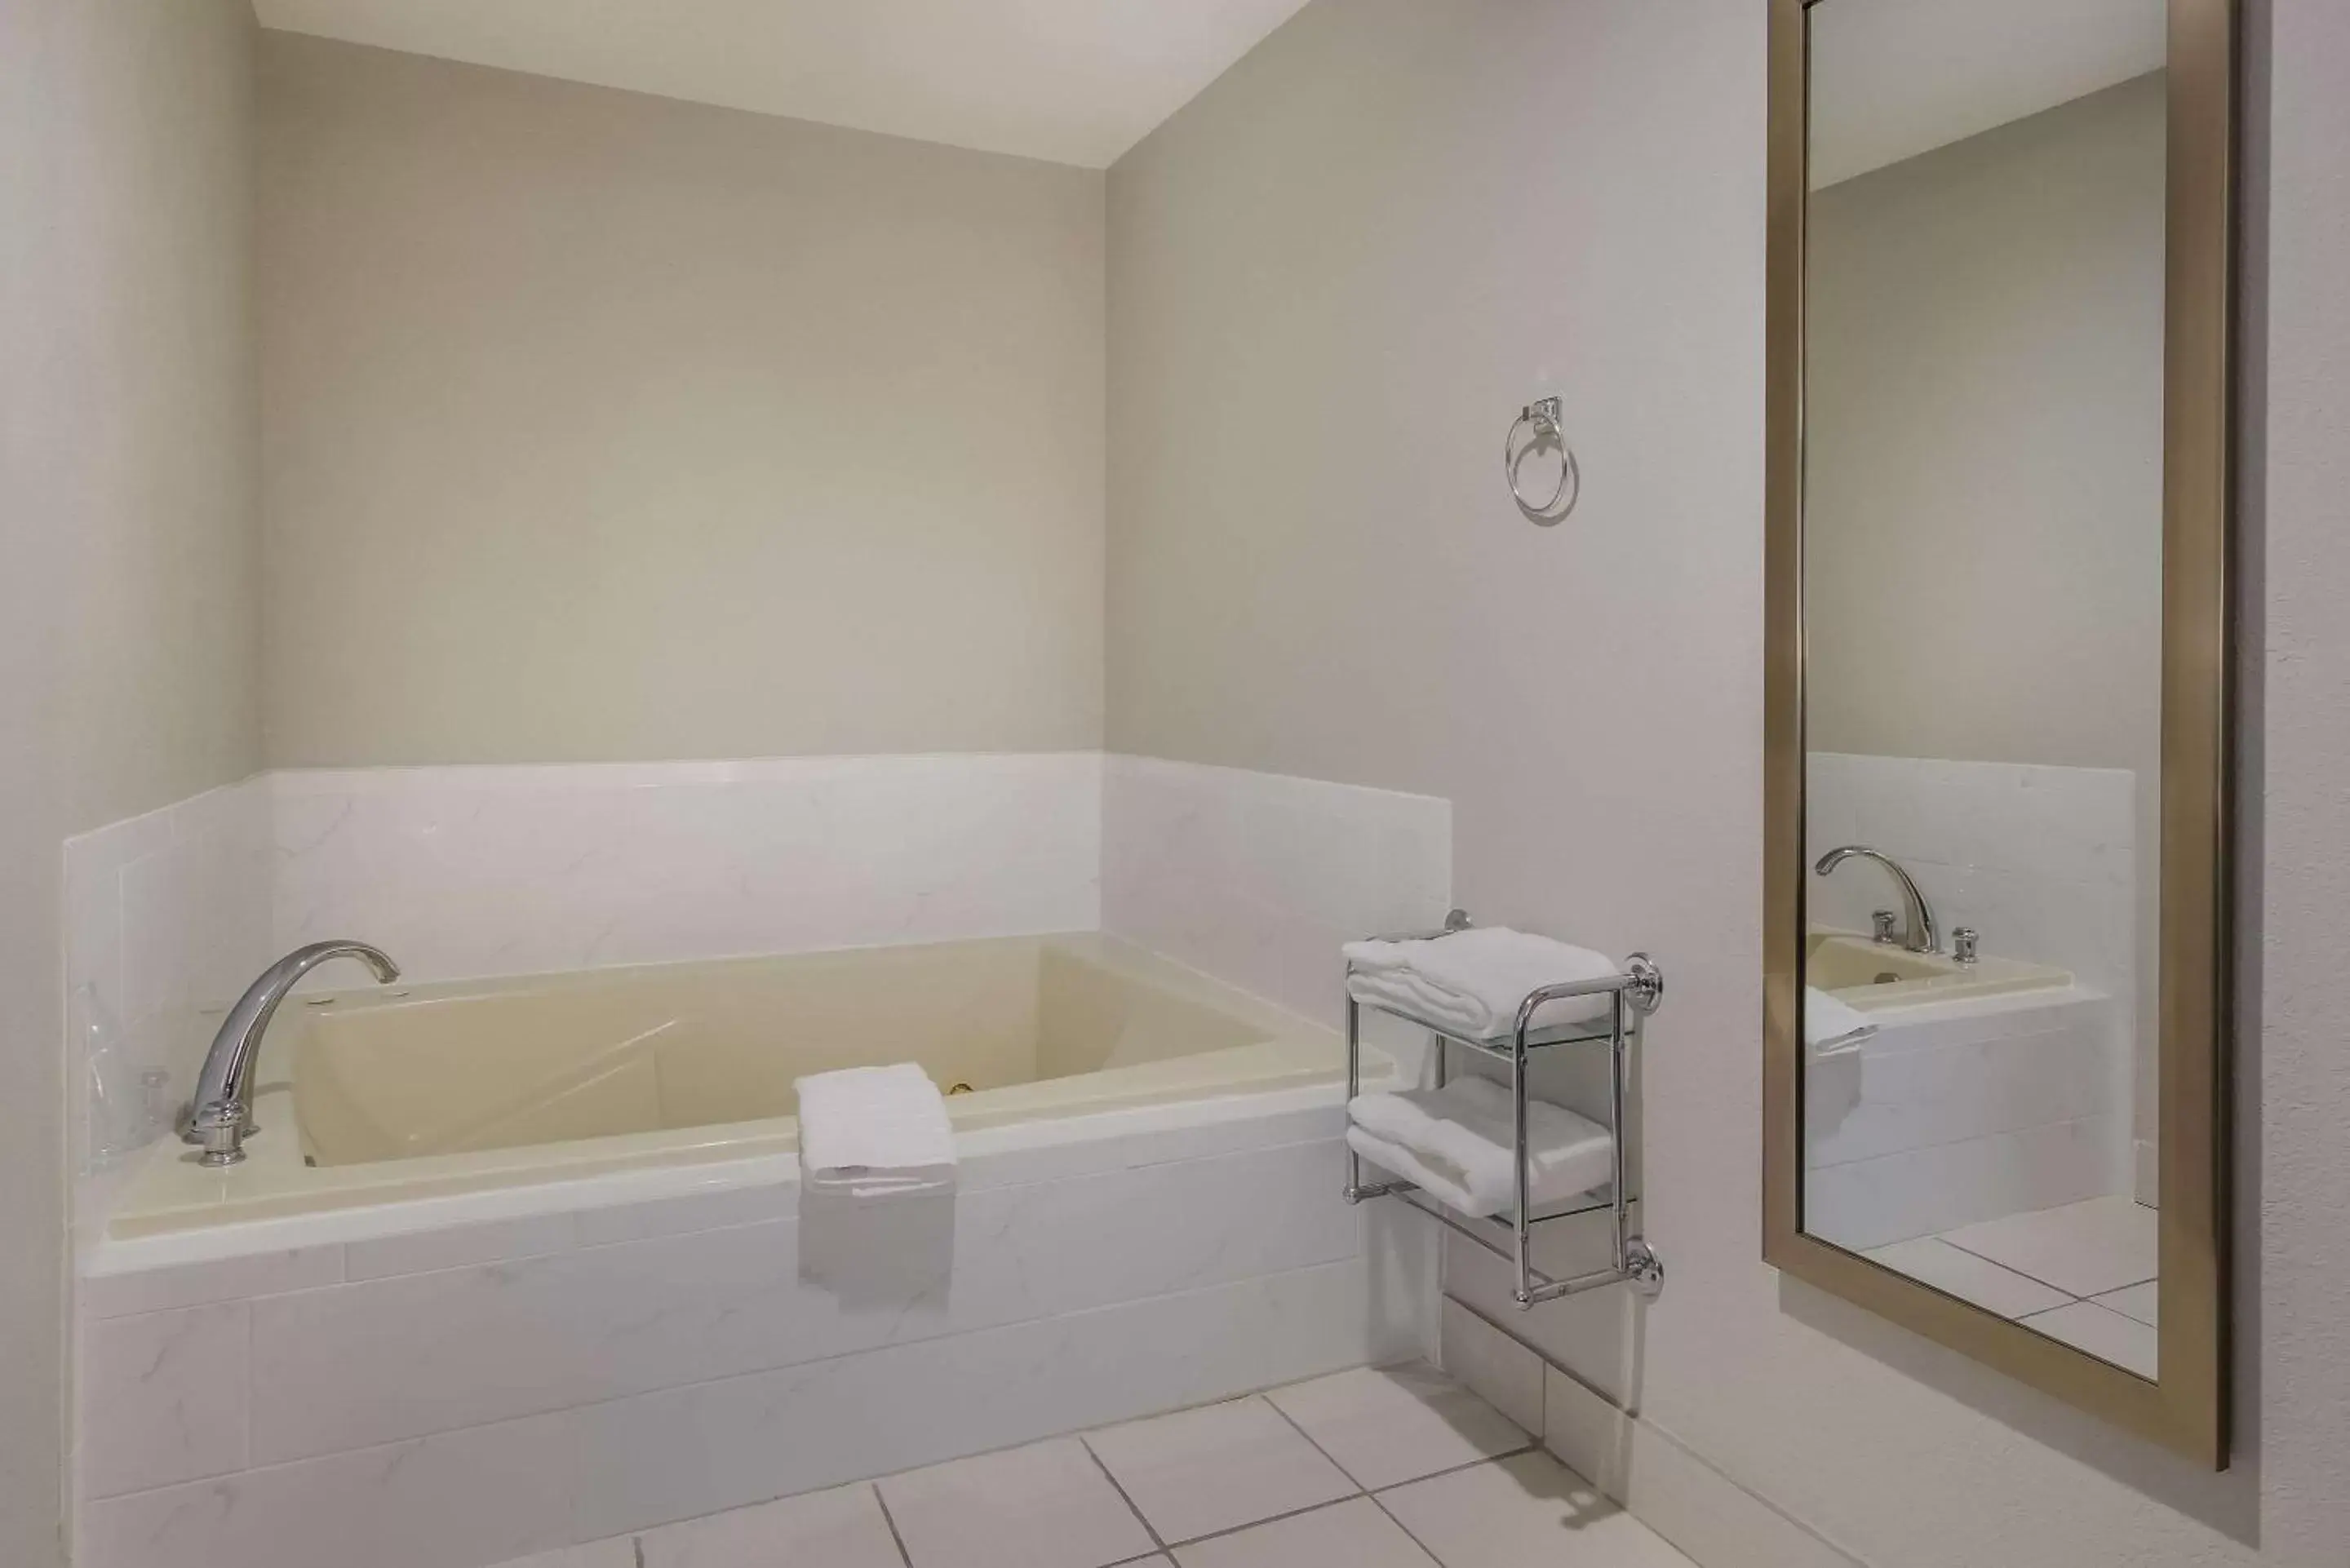 Bedroom, Bathroom in Clarion Pointe Harrodsburg-Danville